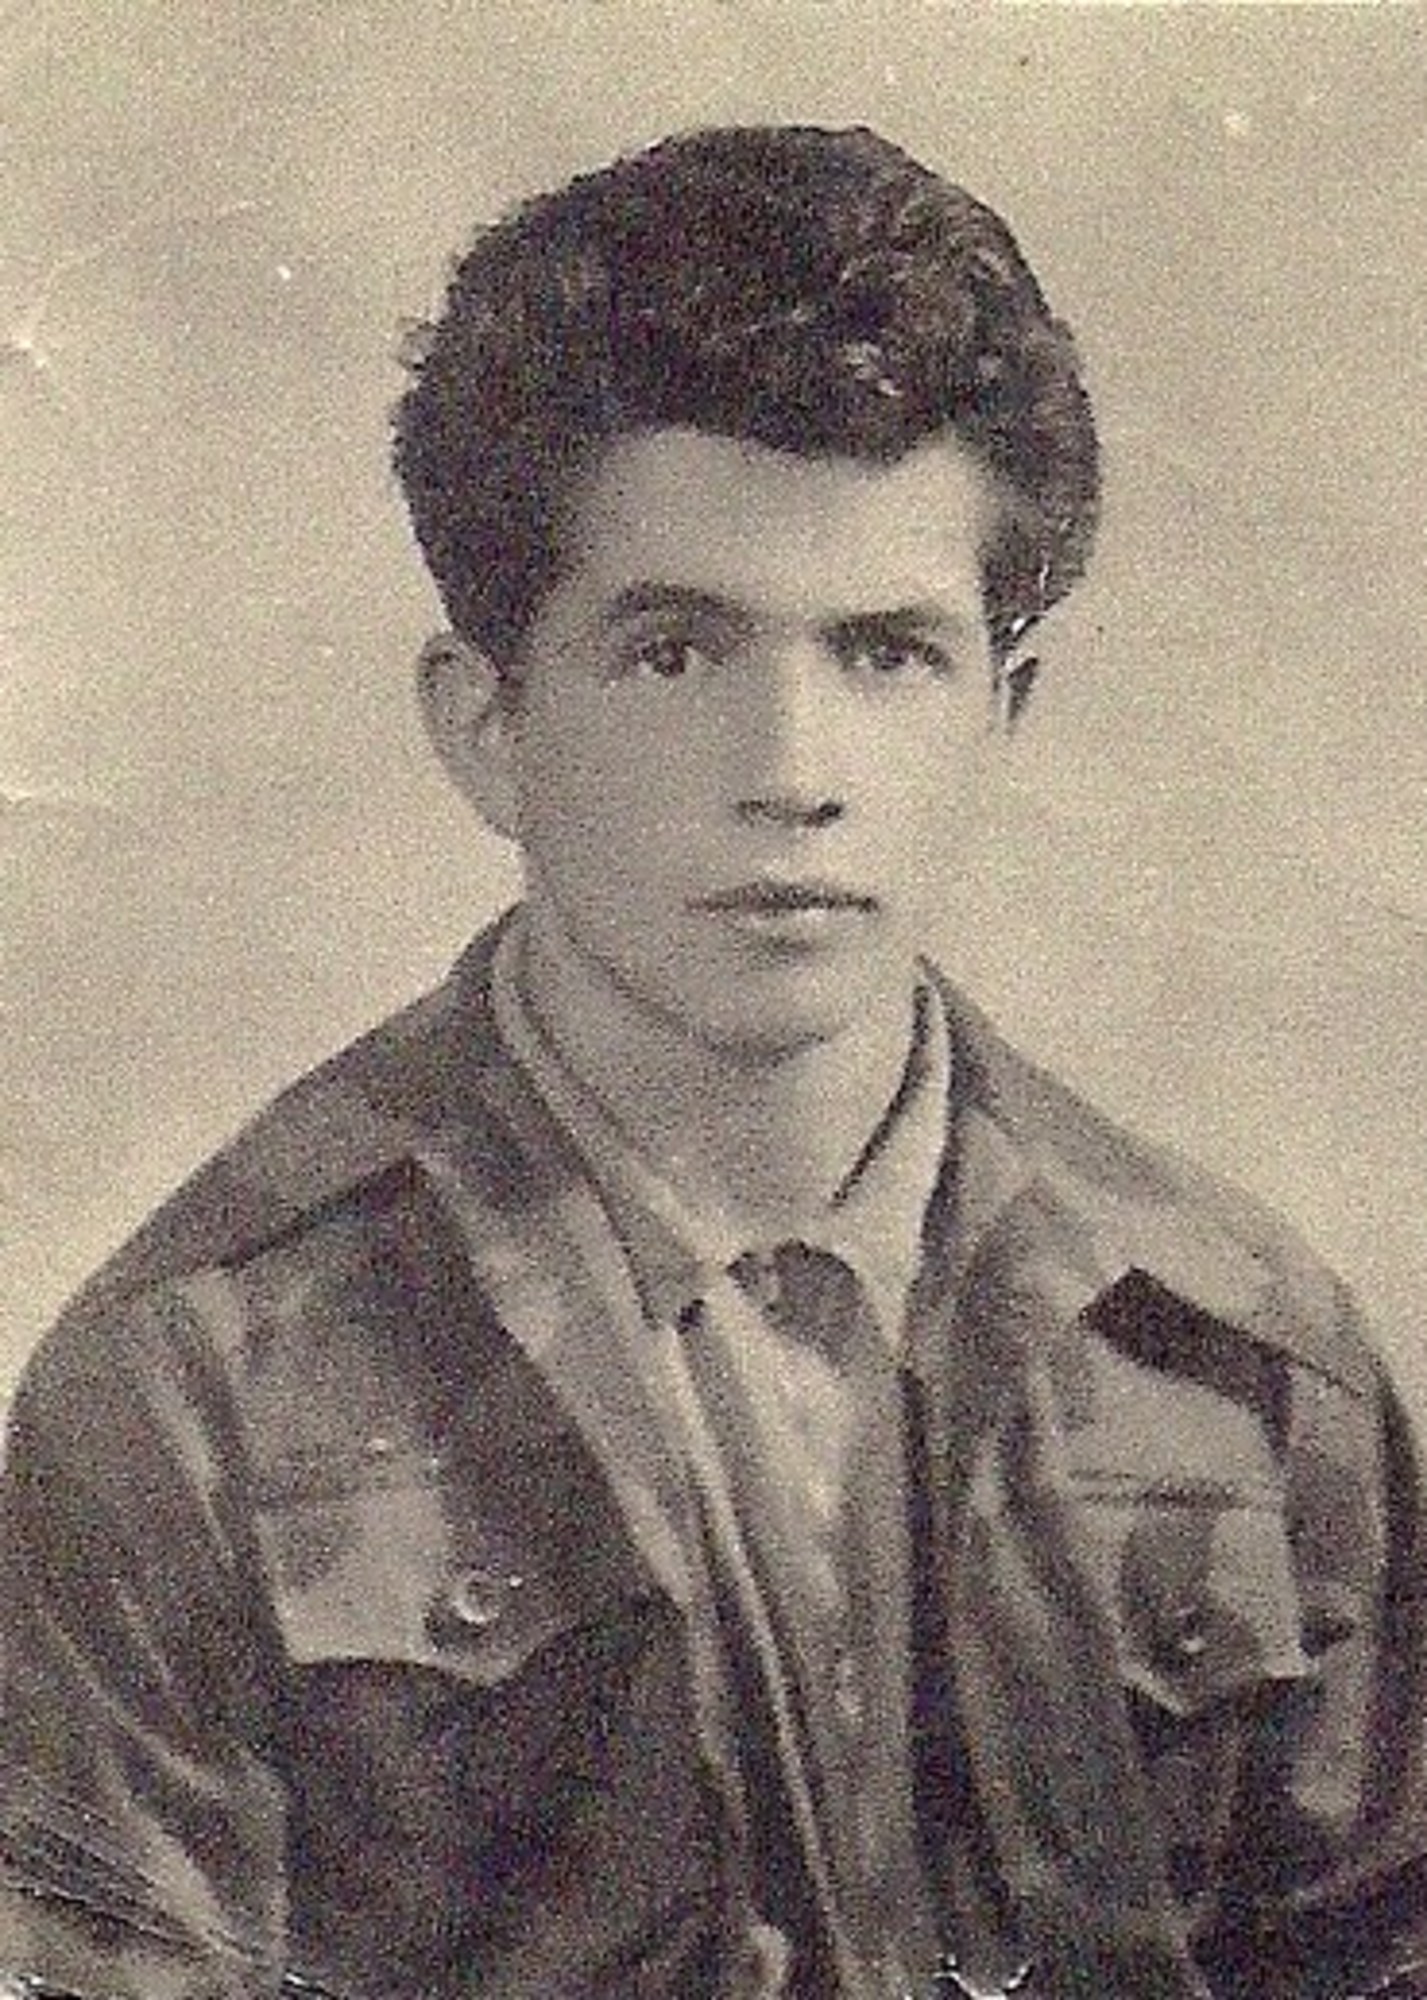 Marino Caviccioli when joining the partisans